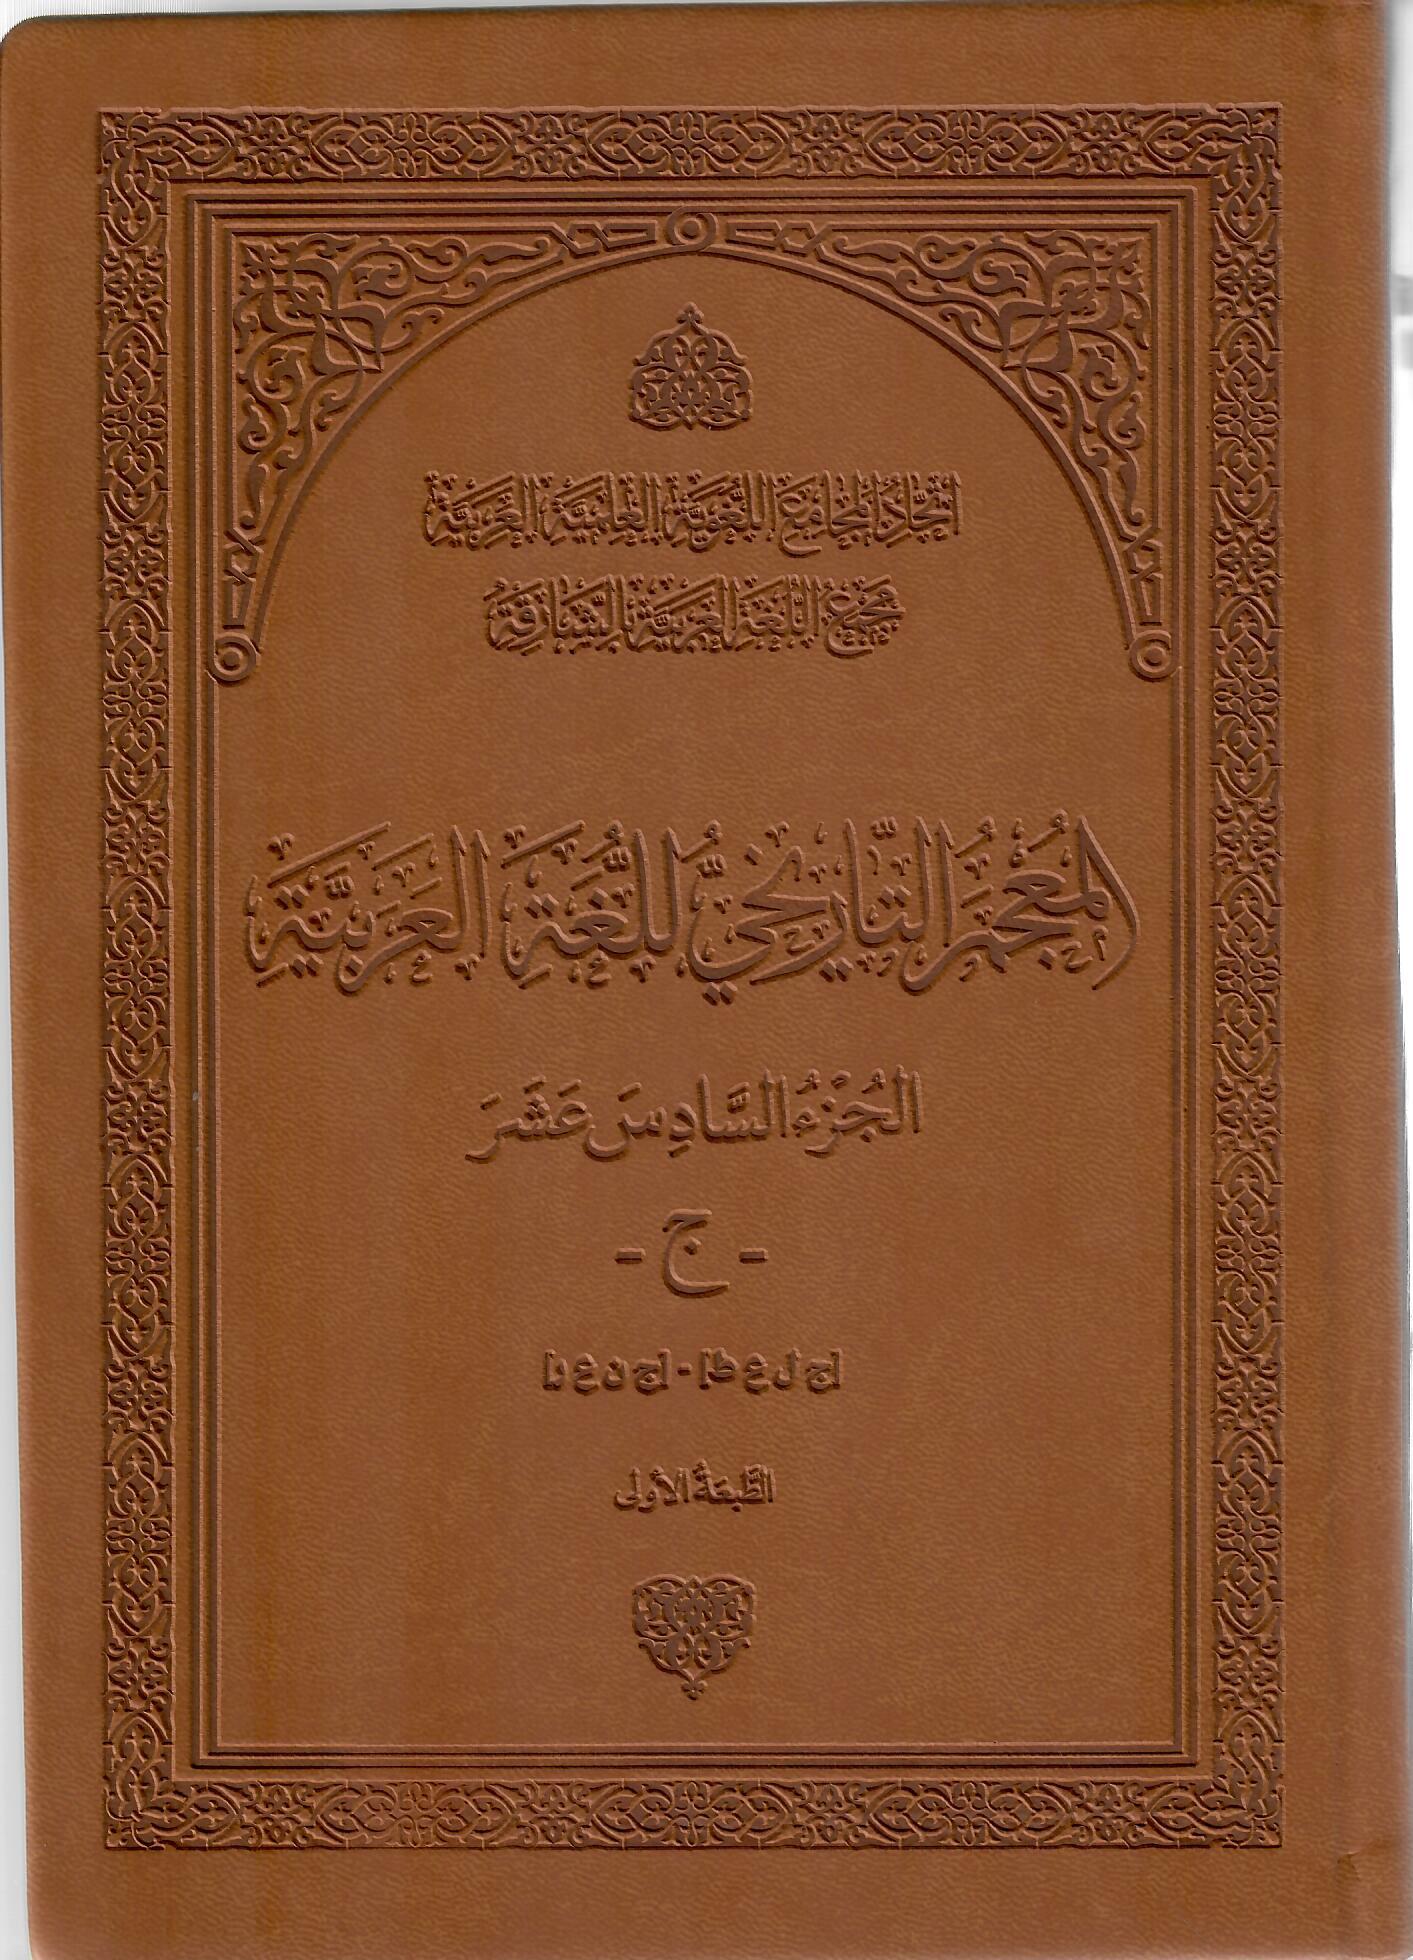 المعجم التاريخ للغة العربية الجزء السادس عشر